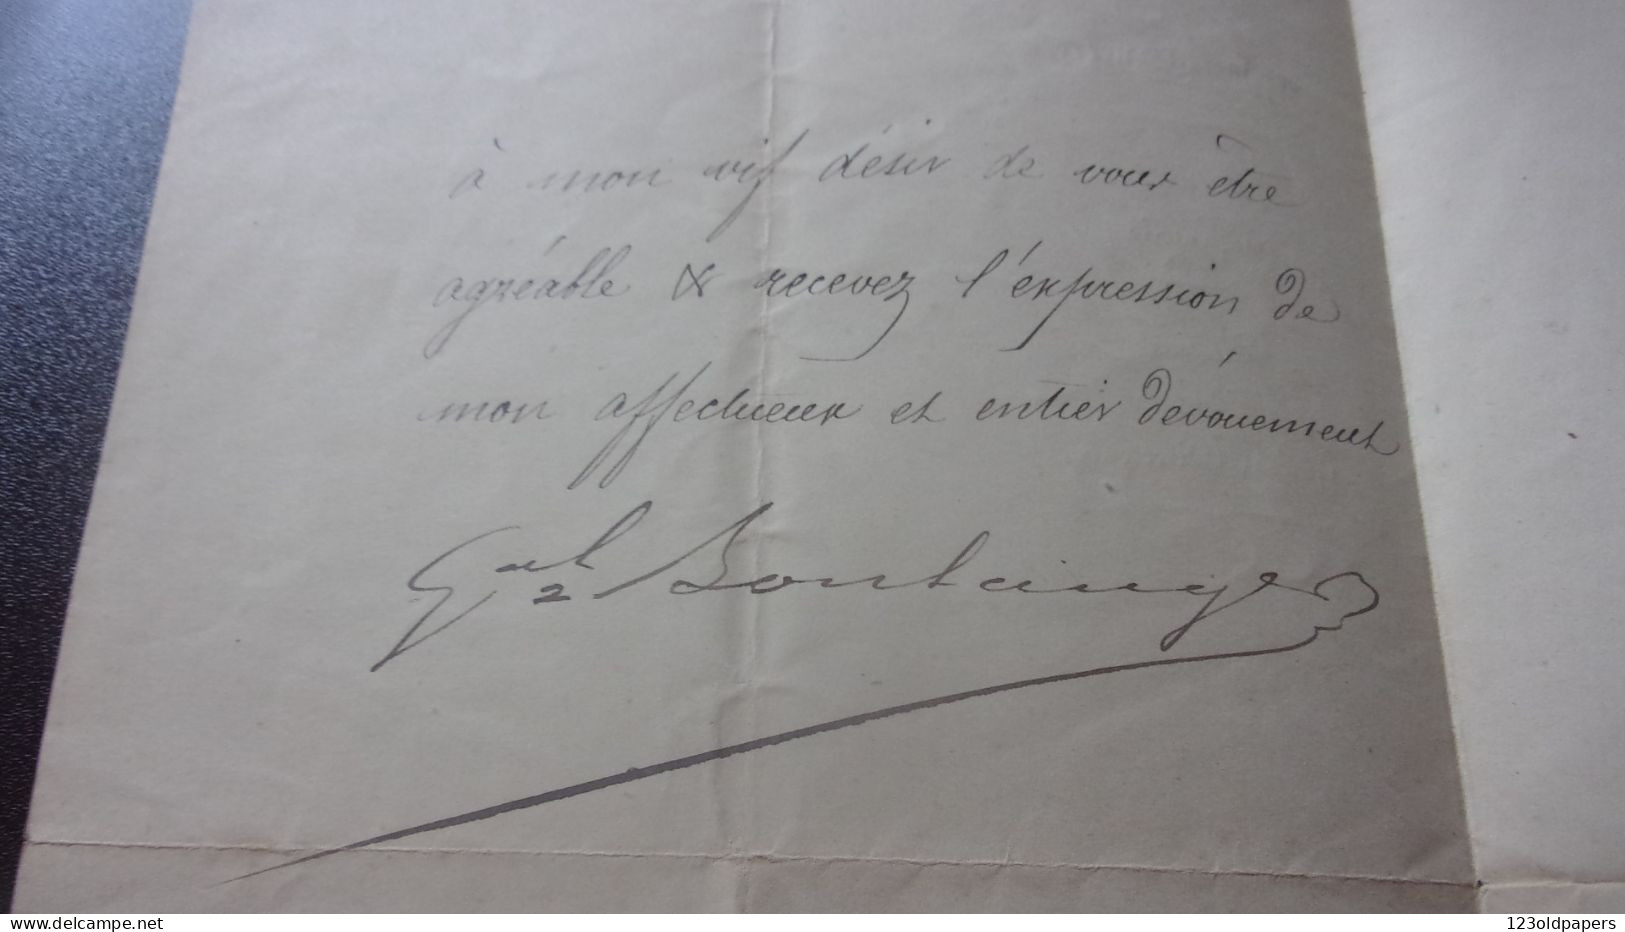 LAS GENERAL BOULANGER 1883 AU LIEUTENANT EDMOND DAGUET  MINISTERE DE LA GUERRE - Dokumente